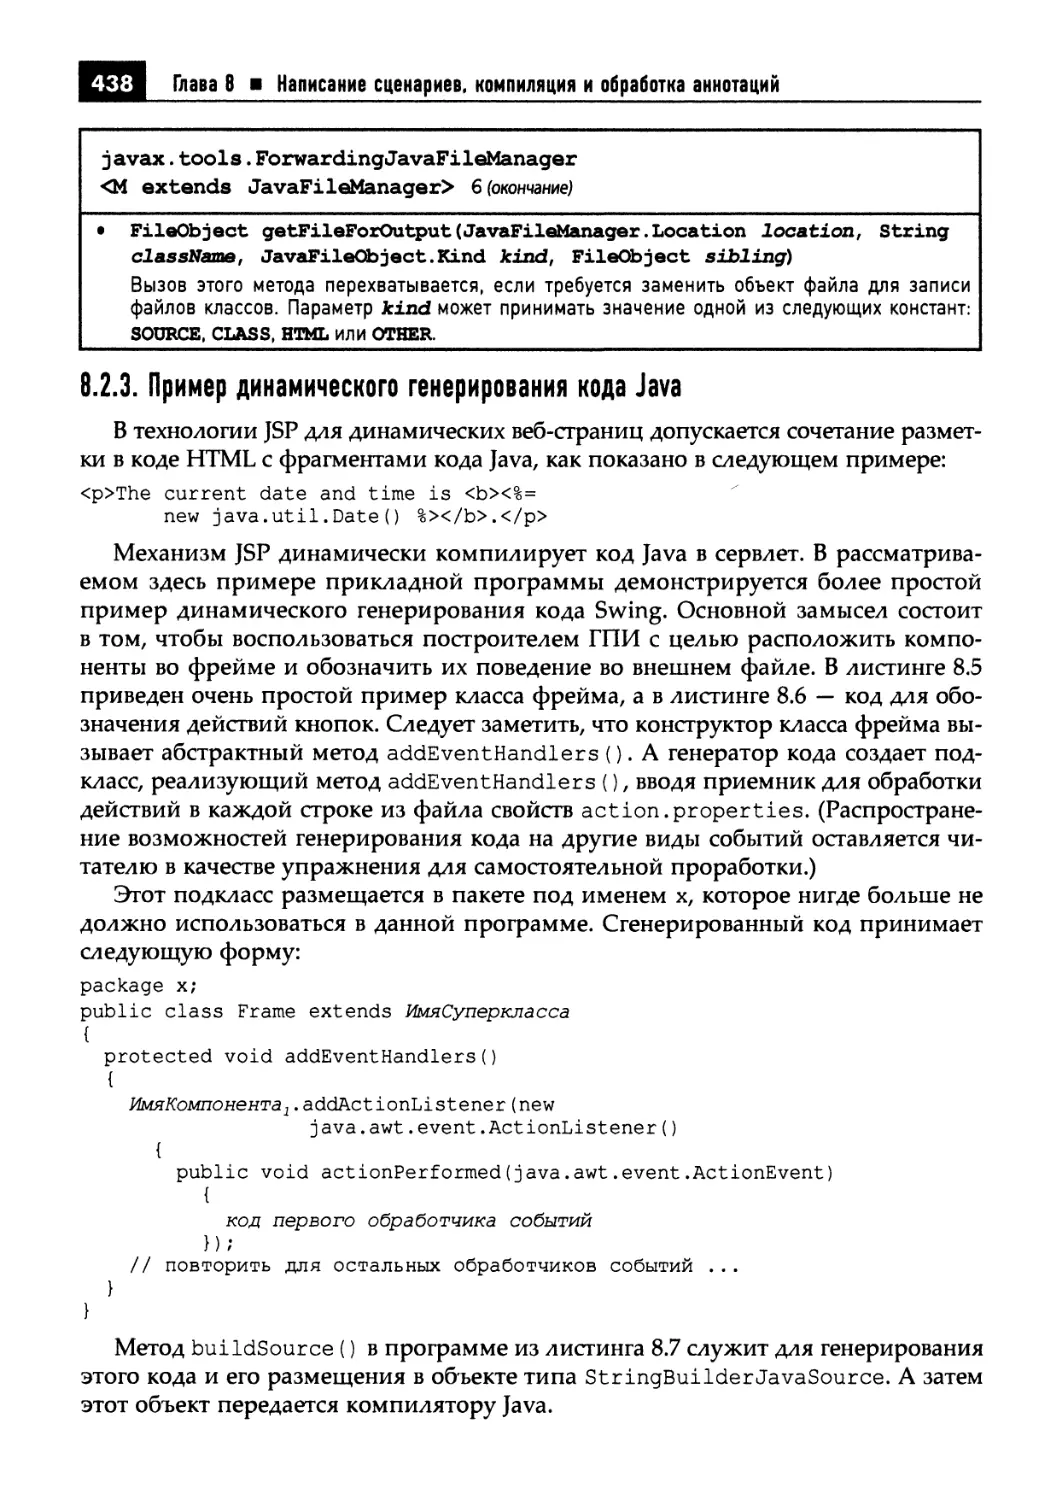 8.2.3. Пример динамического генерирования кода Java